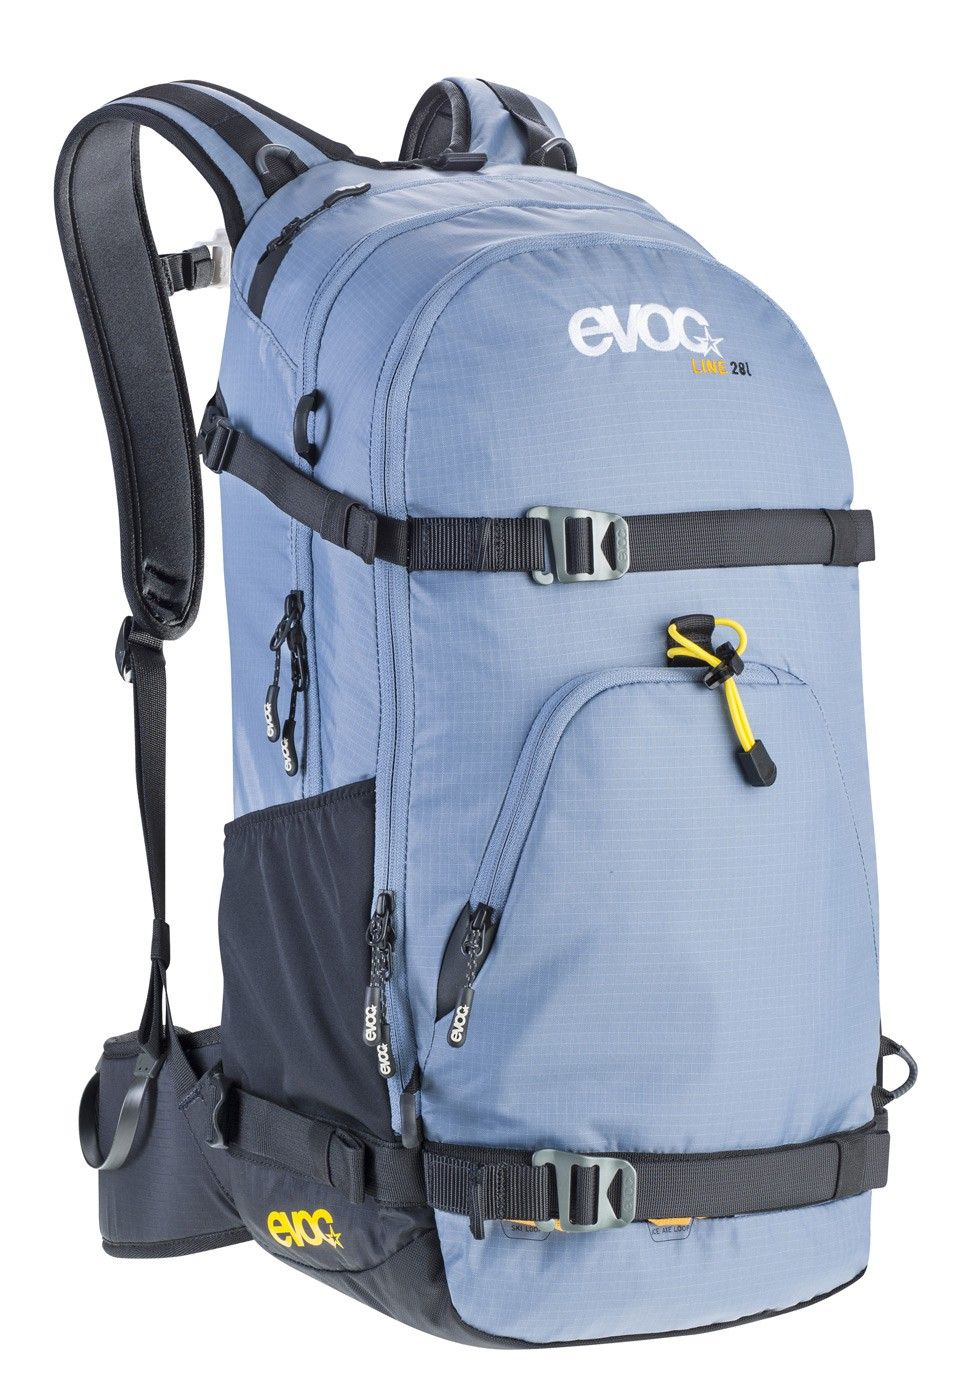 Evoc Рюкзак для катания на горных лыжах Evoc Line 28